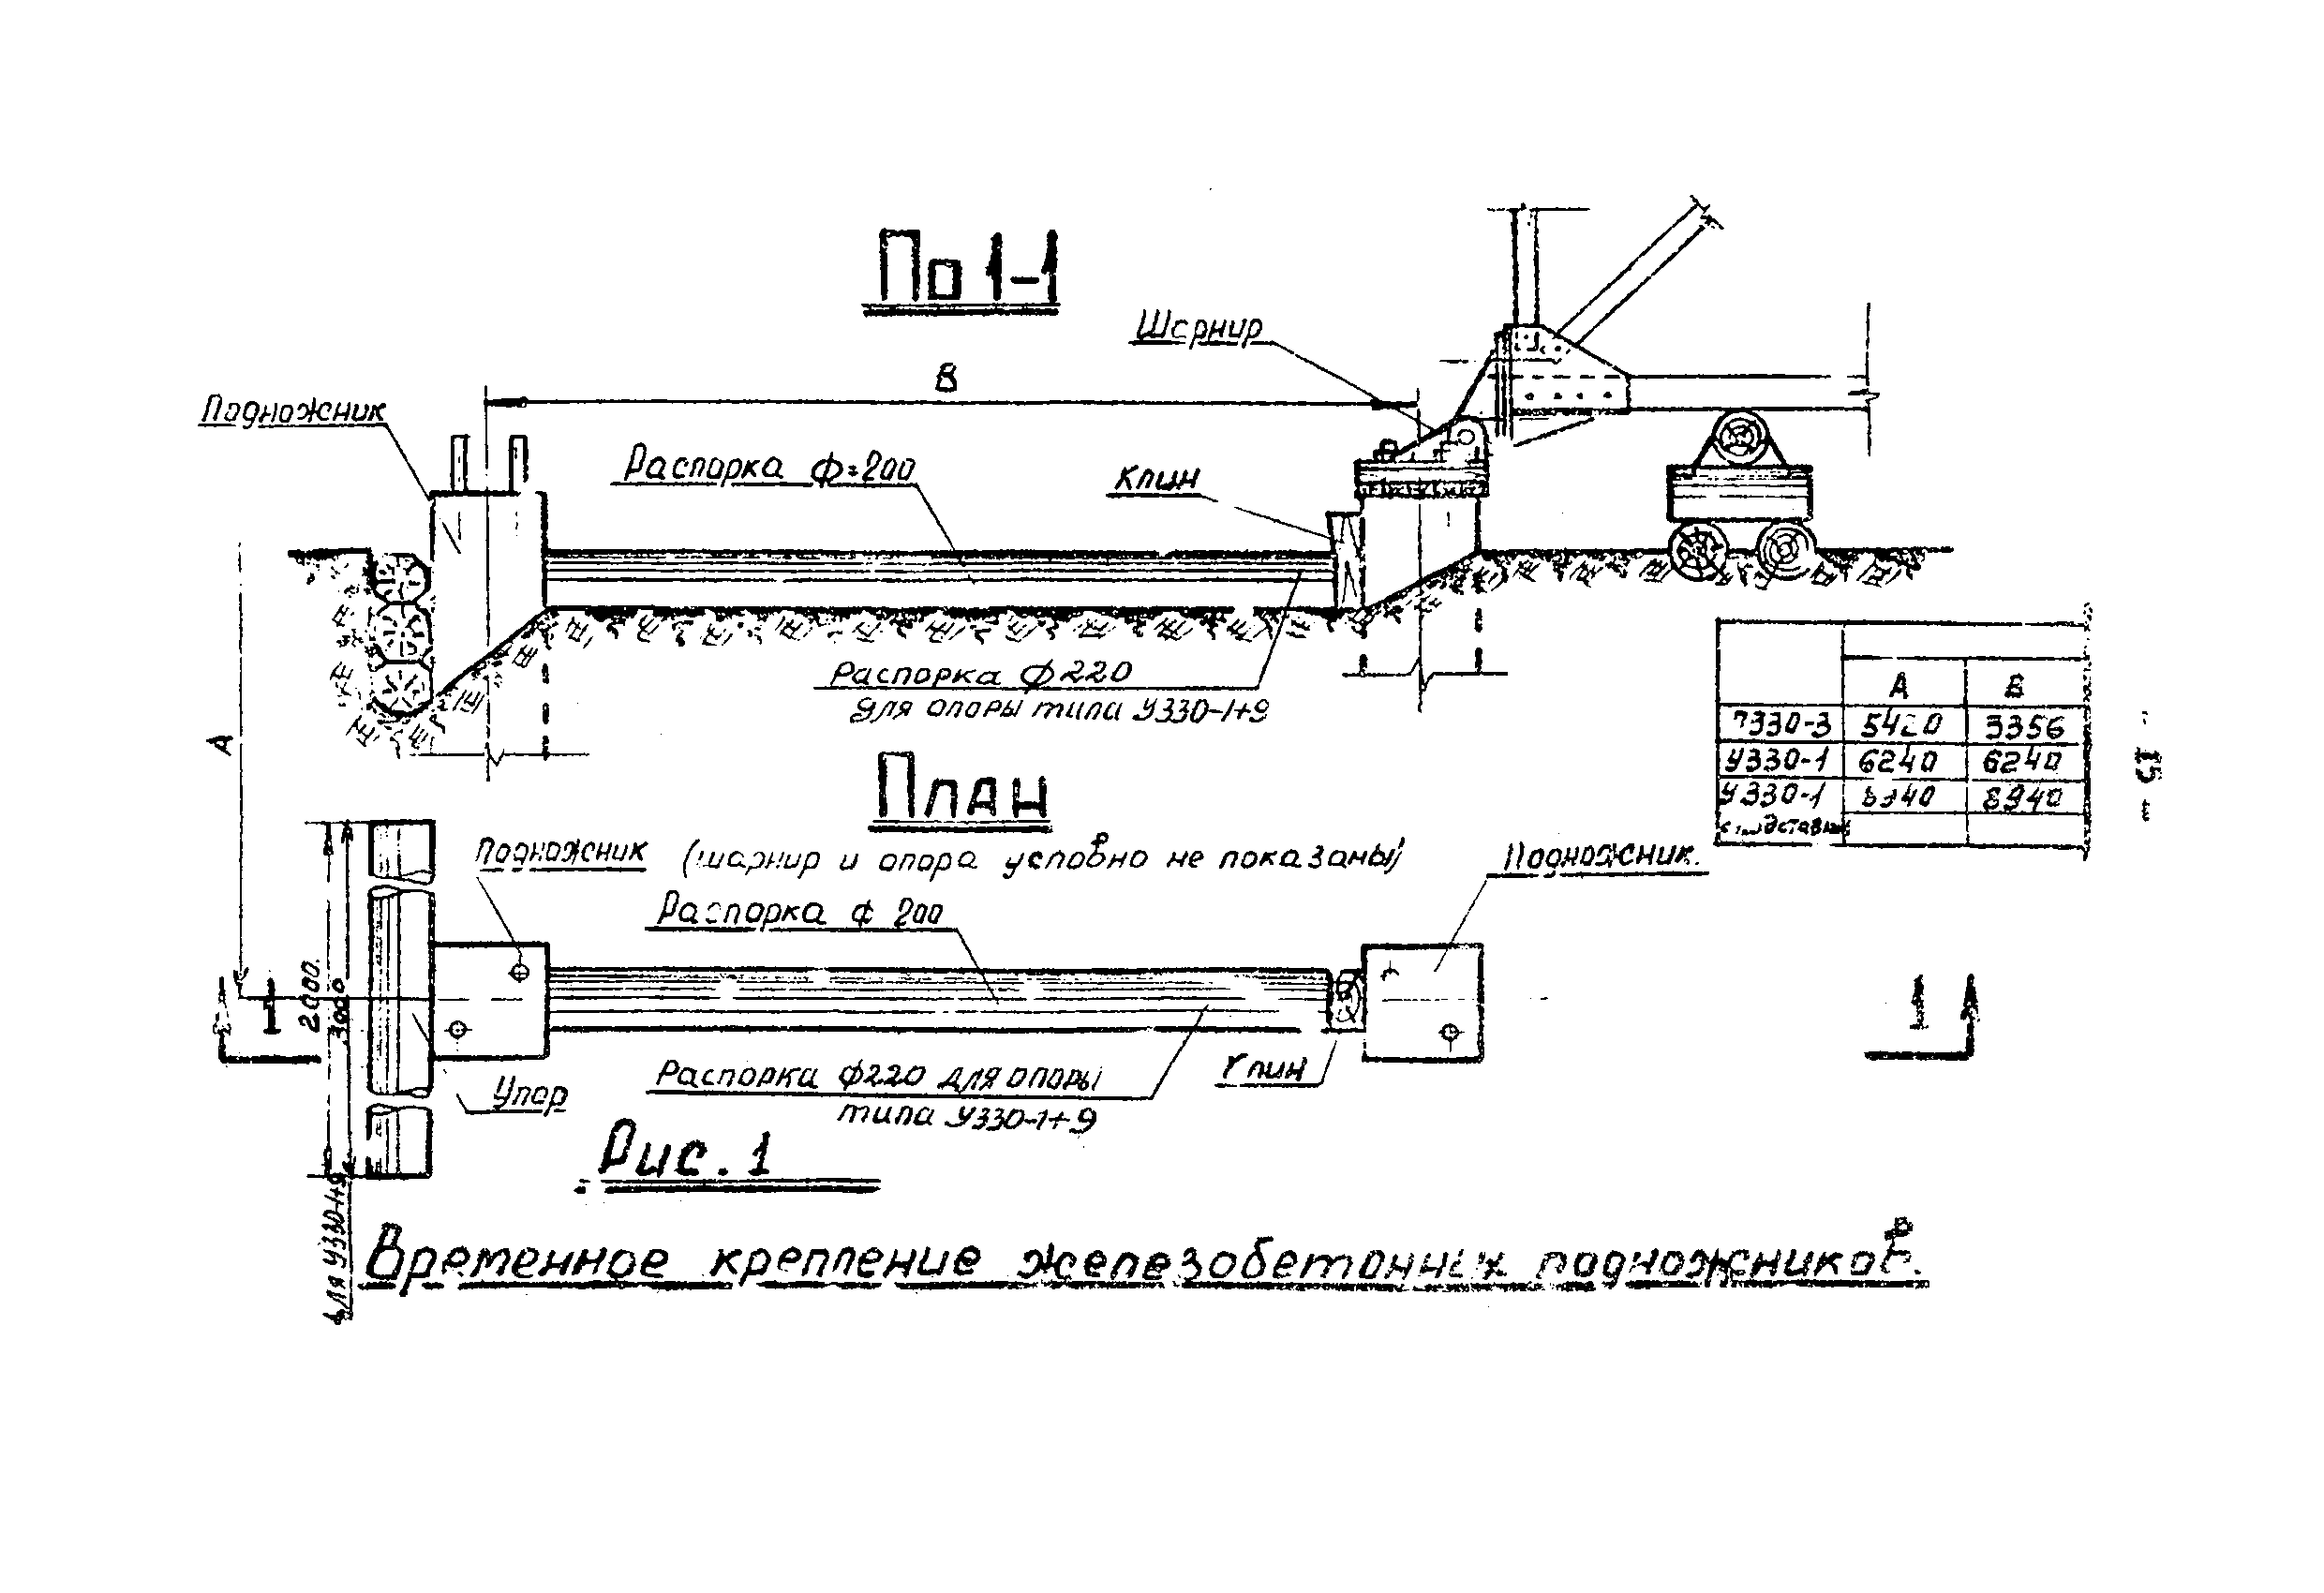 ТТК К-III-27-2